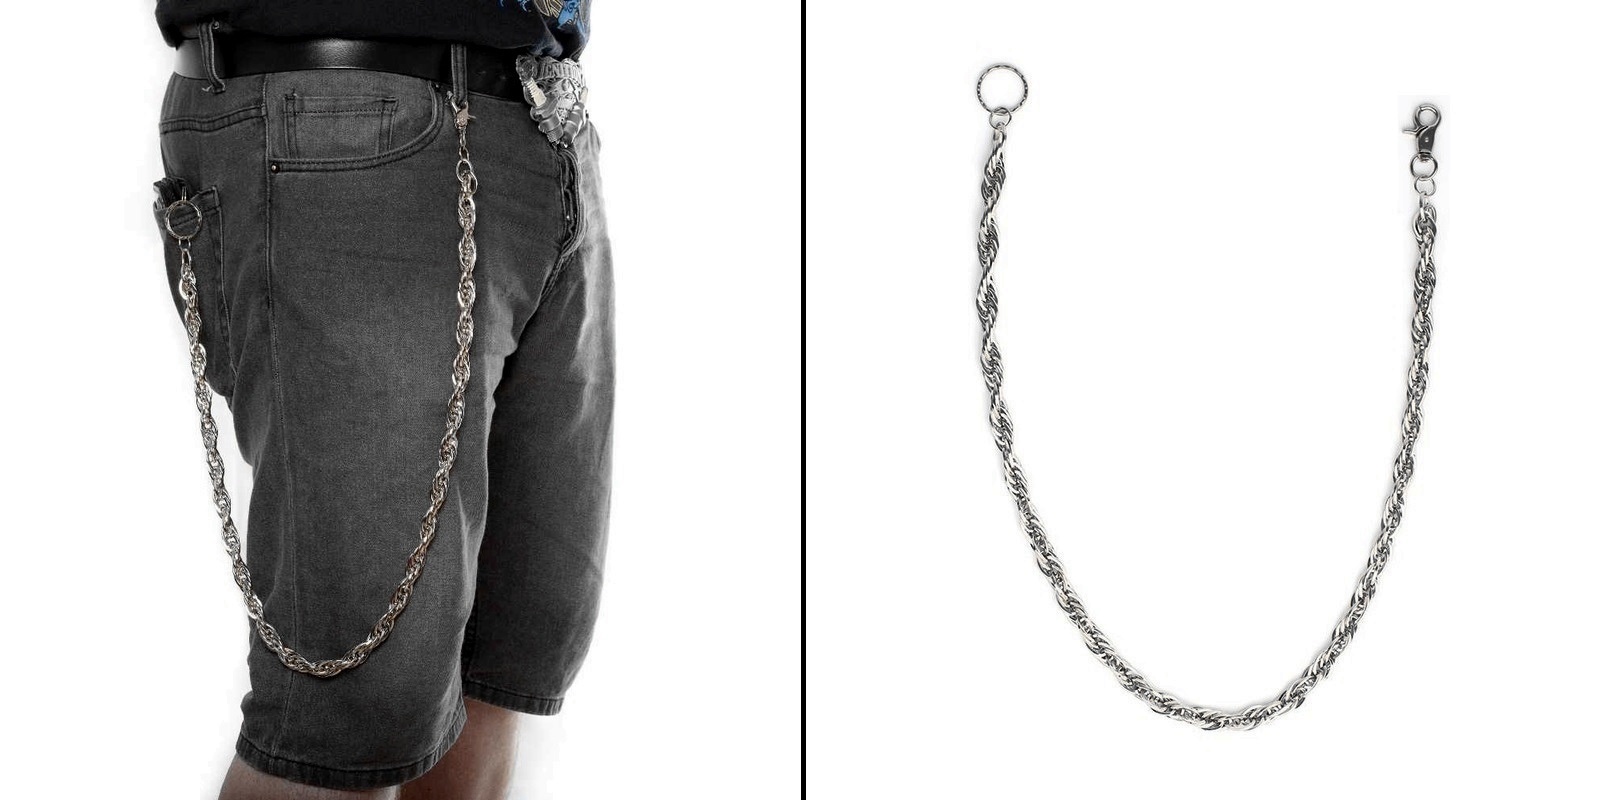 Řetěz na kalhoty splétaný